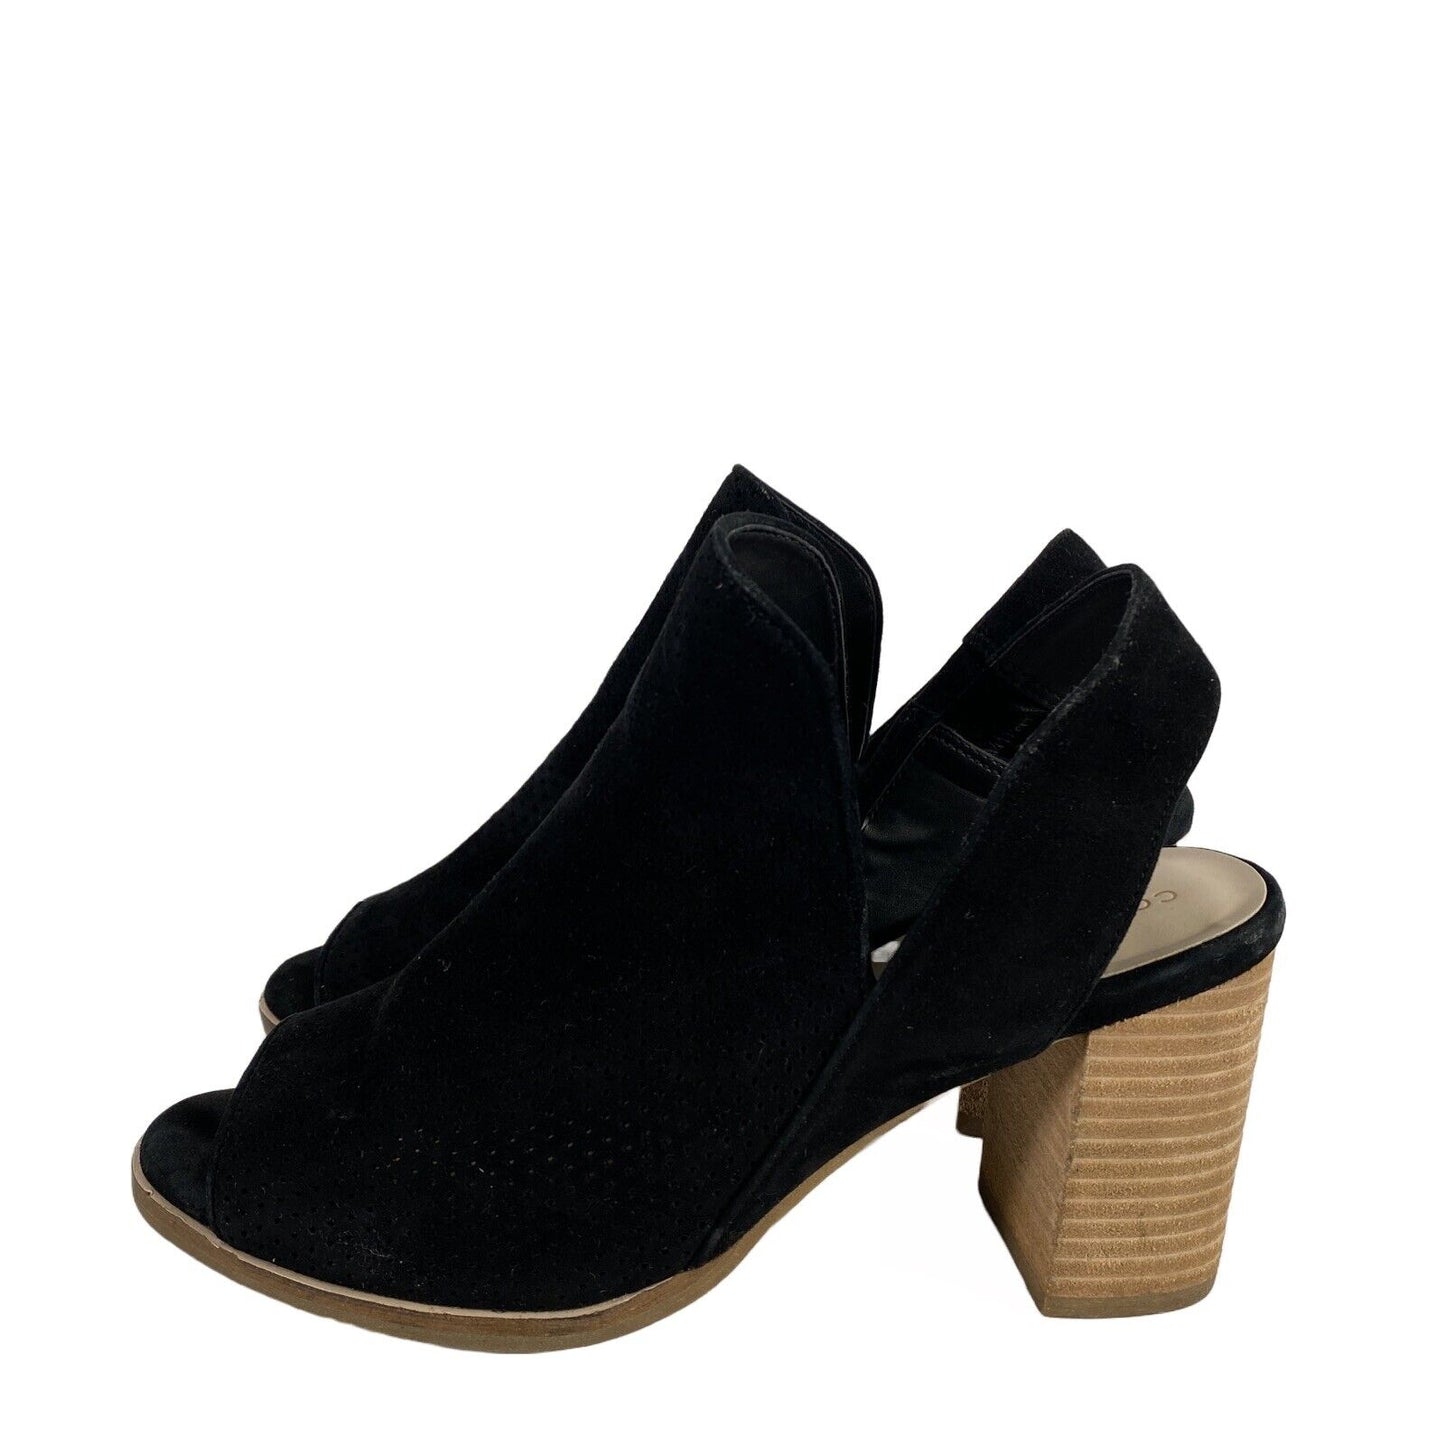 Cole Haan Women's Black Suede Callista Slingback Heeled Sandals - 7.5